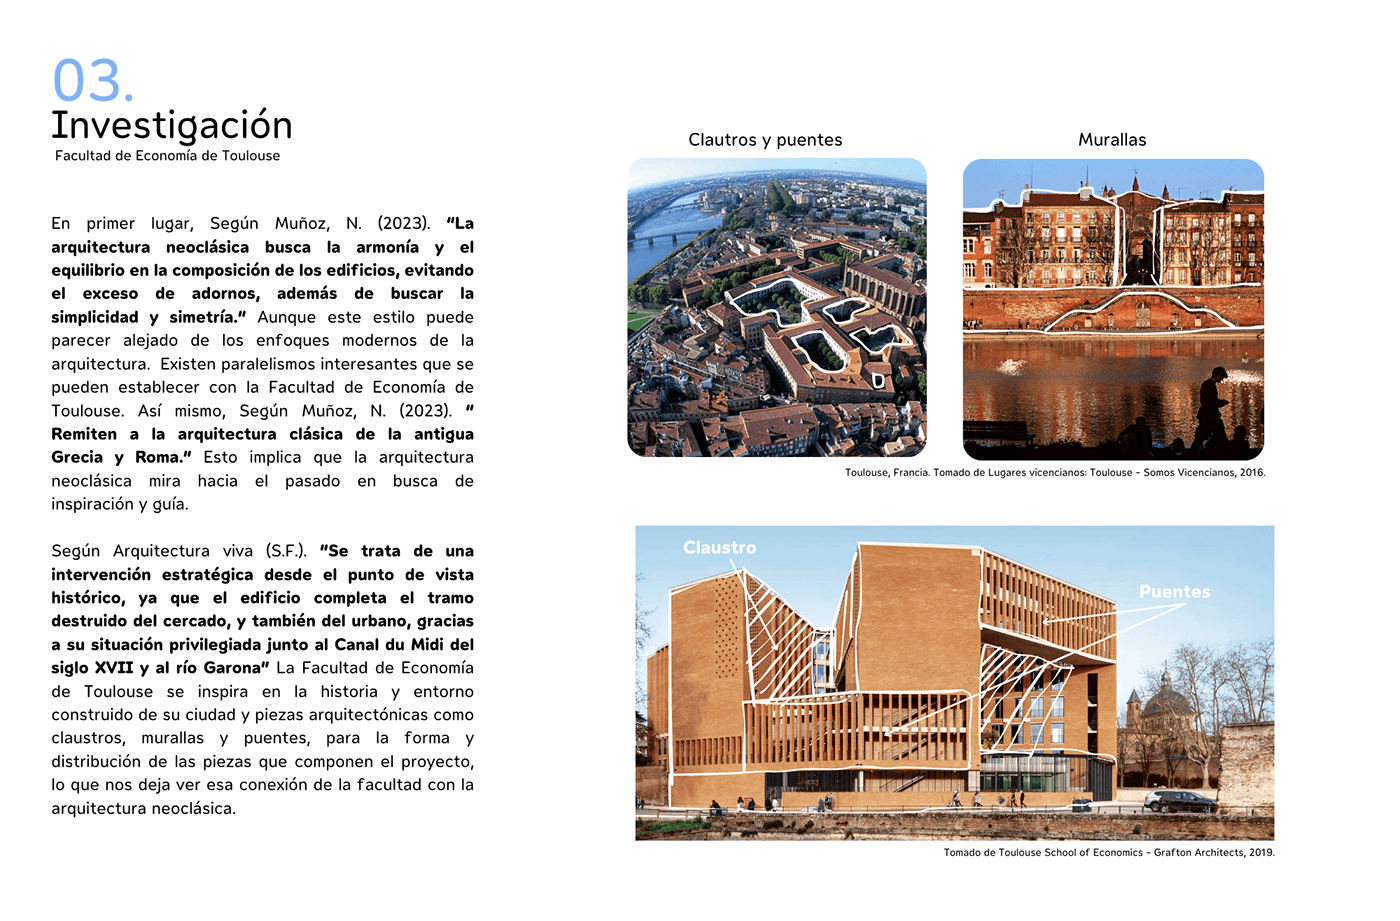 architecture ARQUNIANDES ENTORNOCONSTRUIDO